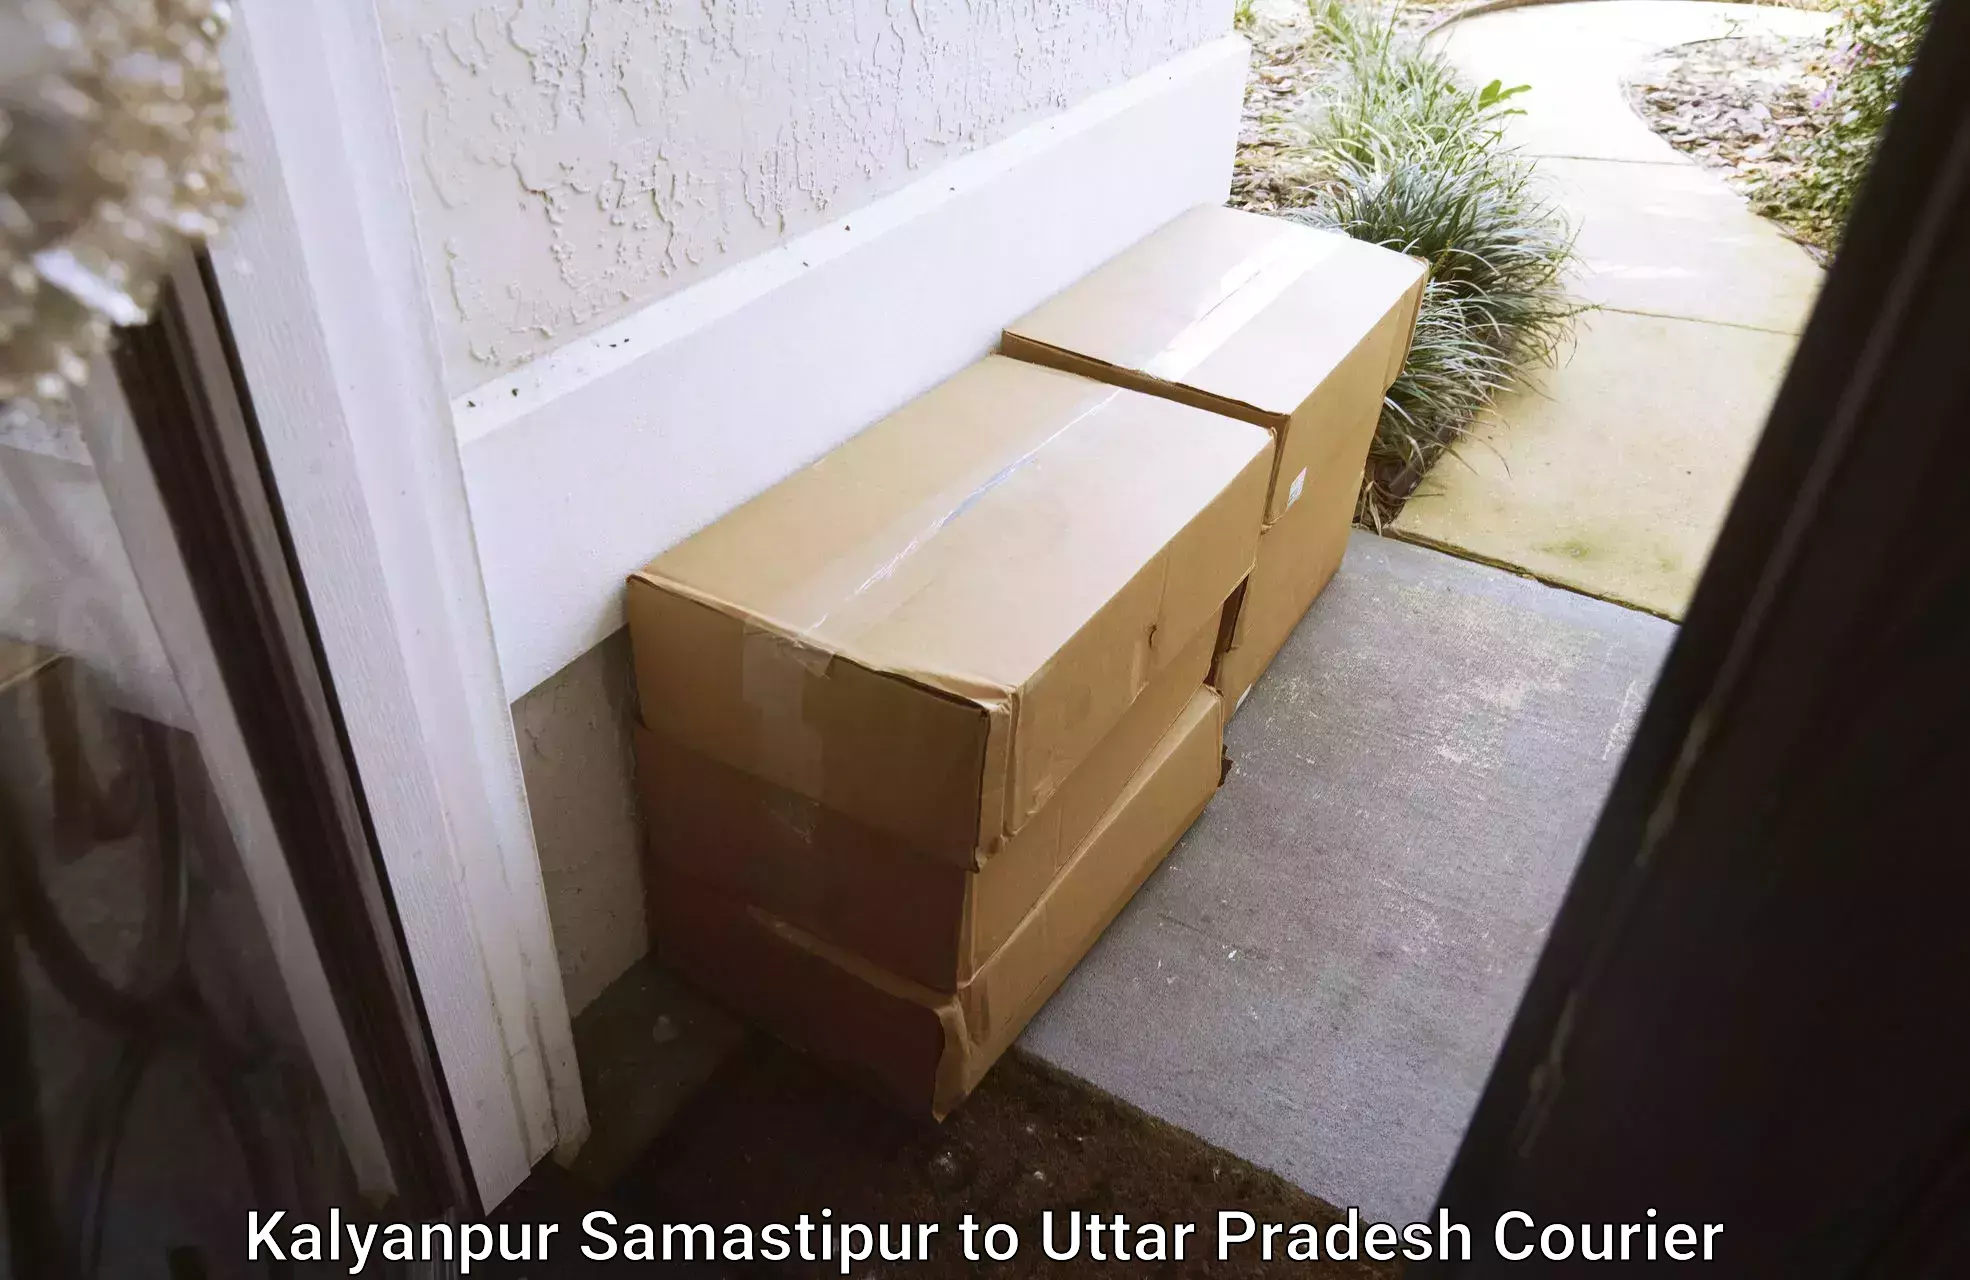 Furniture moving experts Kalyanpur Samastipur to Chopan